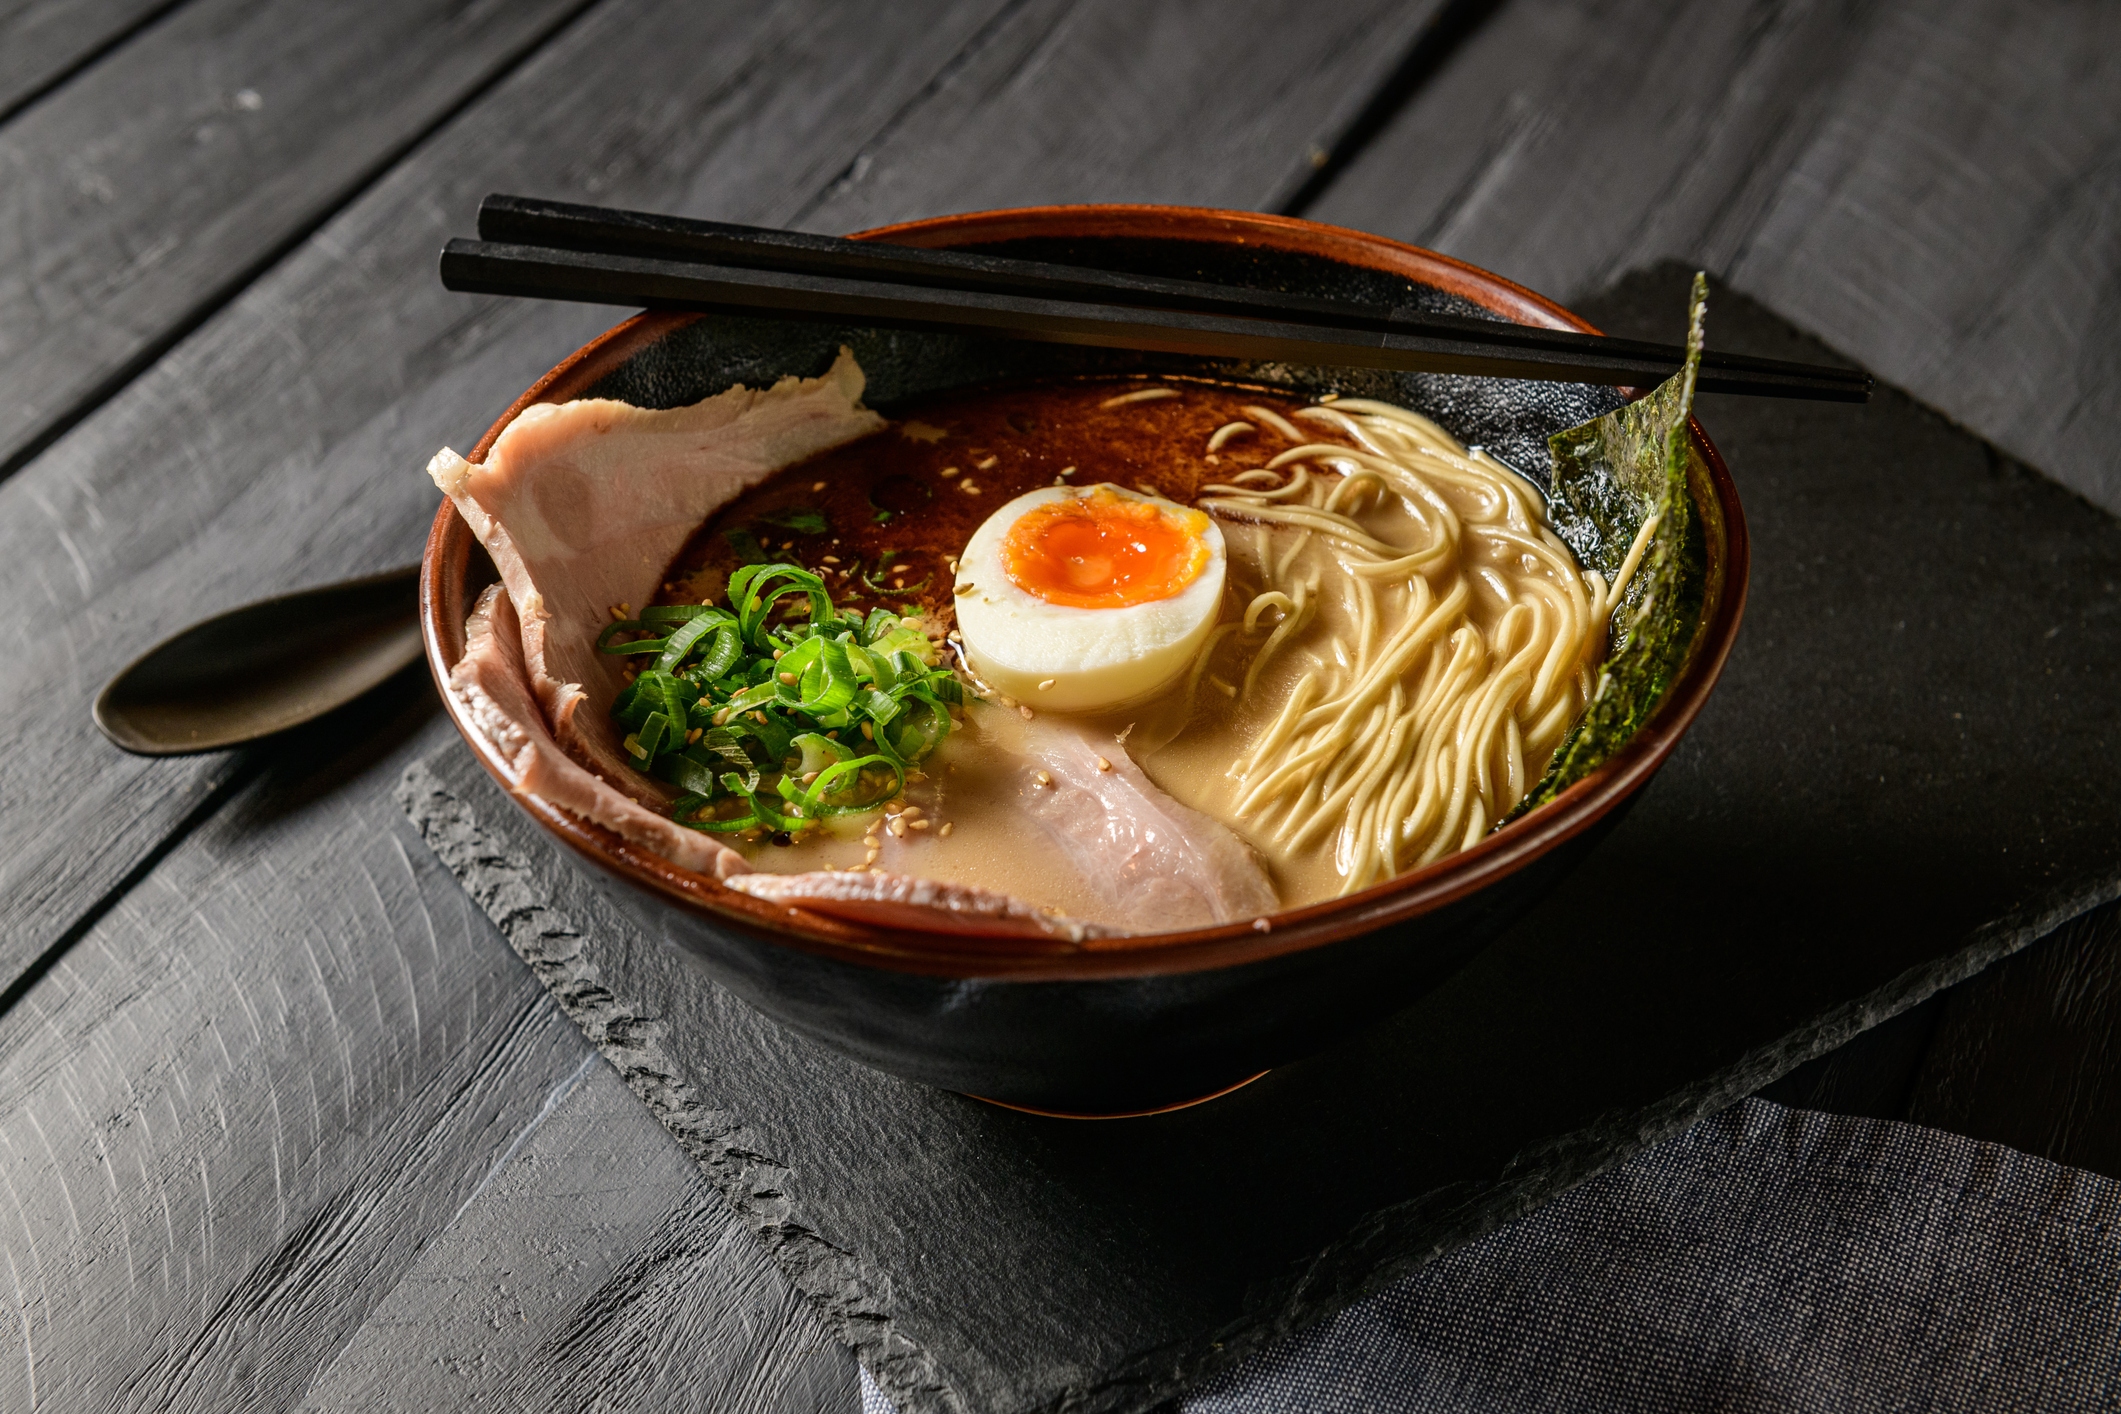 A japán Tonkocu ramen a világ legjobb levese a lista szerint. A kifejezetten sűrű, gazdag leves alapját a sertéshús, illetve a sertéscsontból főzött alaplé adja, amire ízlés szerint kerülnek a feltétek. A tészta, a tojás általában kötelező elem, de a titok az ízesítő szósz, a "taré", aminek összetétele a szakácson múlik, és a legjobbak természetesen titokban tartják a pontos összetevőket (fotó: Getty Images)